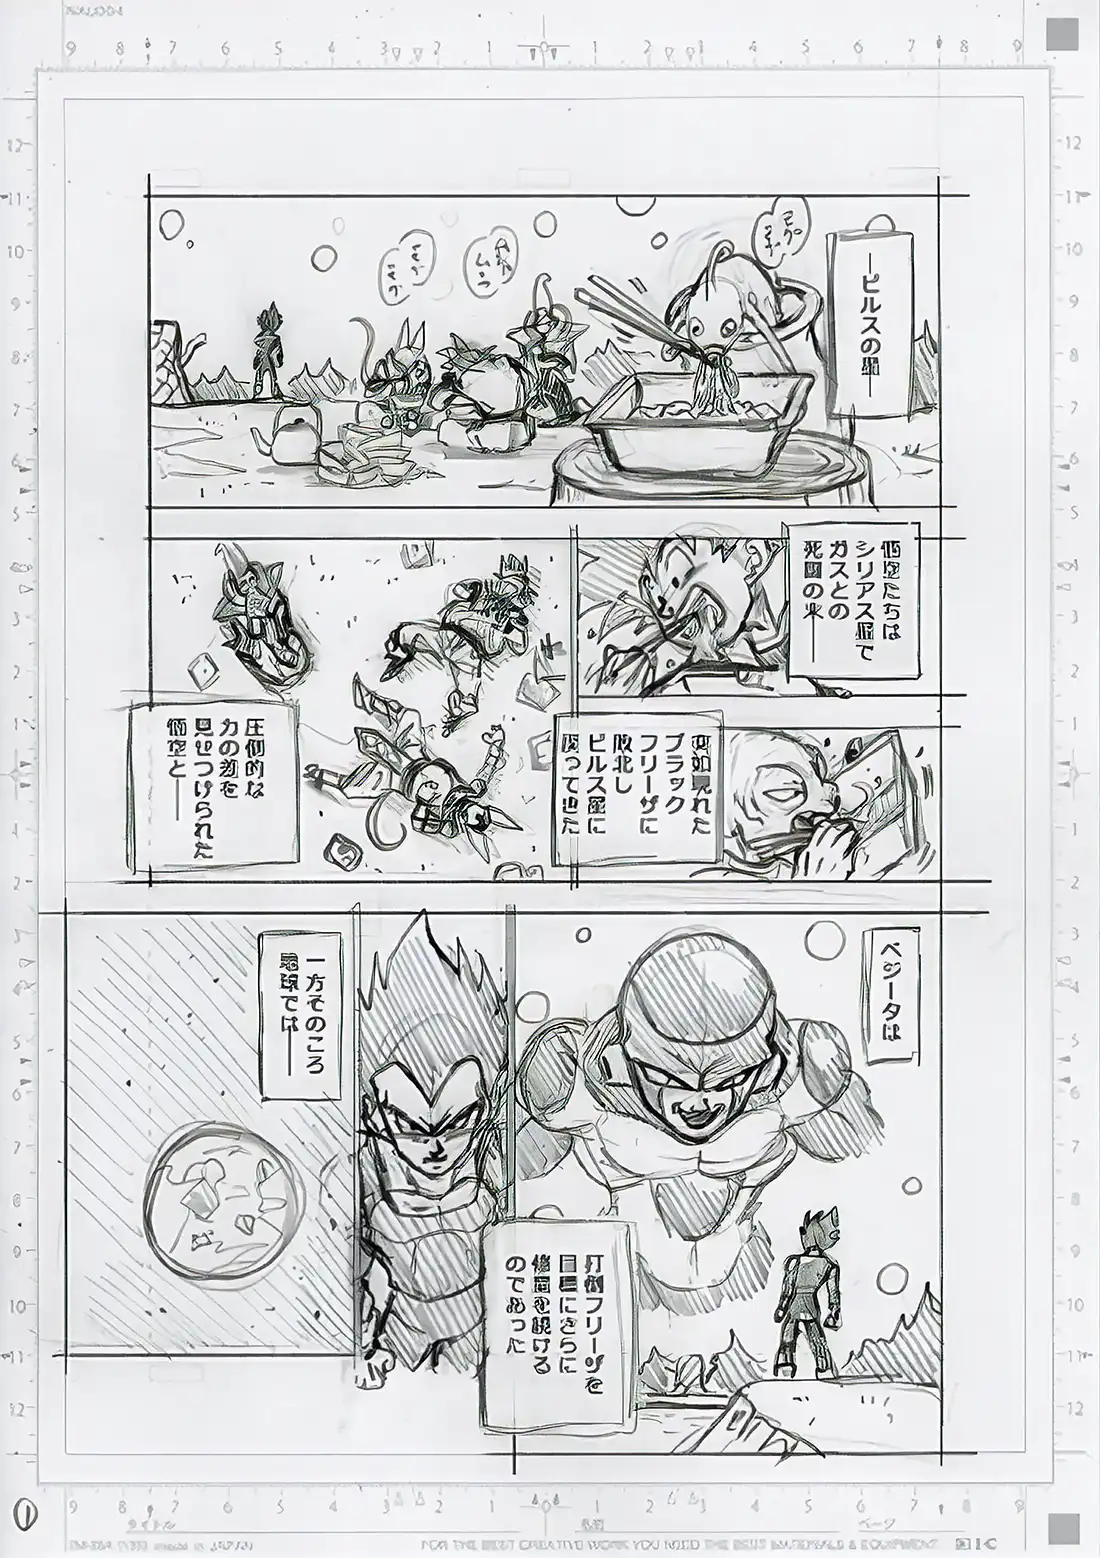 Brouillons et résumé du chapitre 88 de Dragon Ball Super : Les Saiyaman X1  et X2